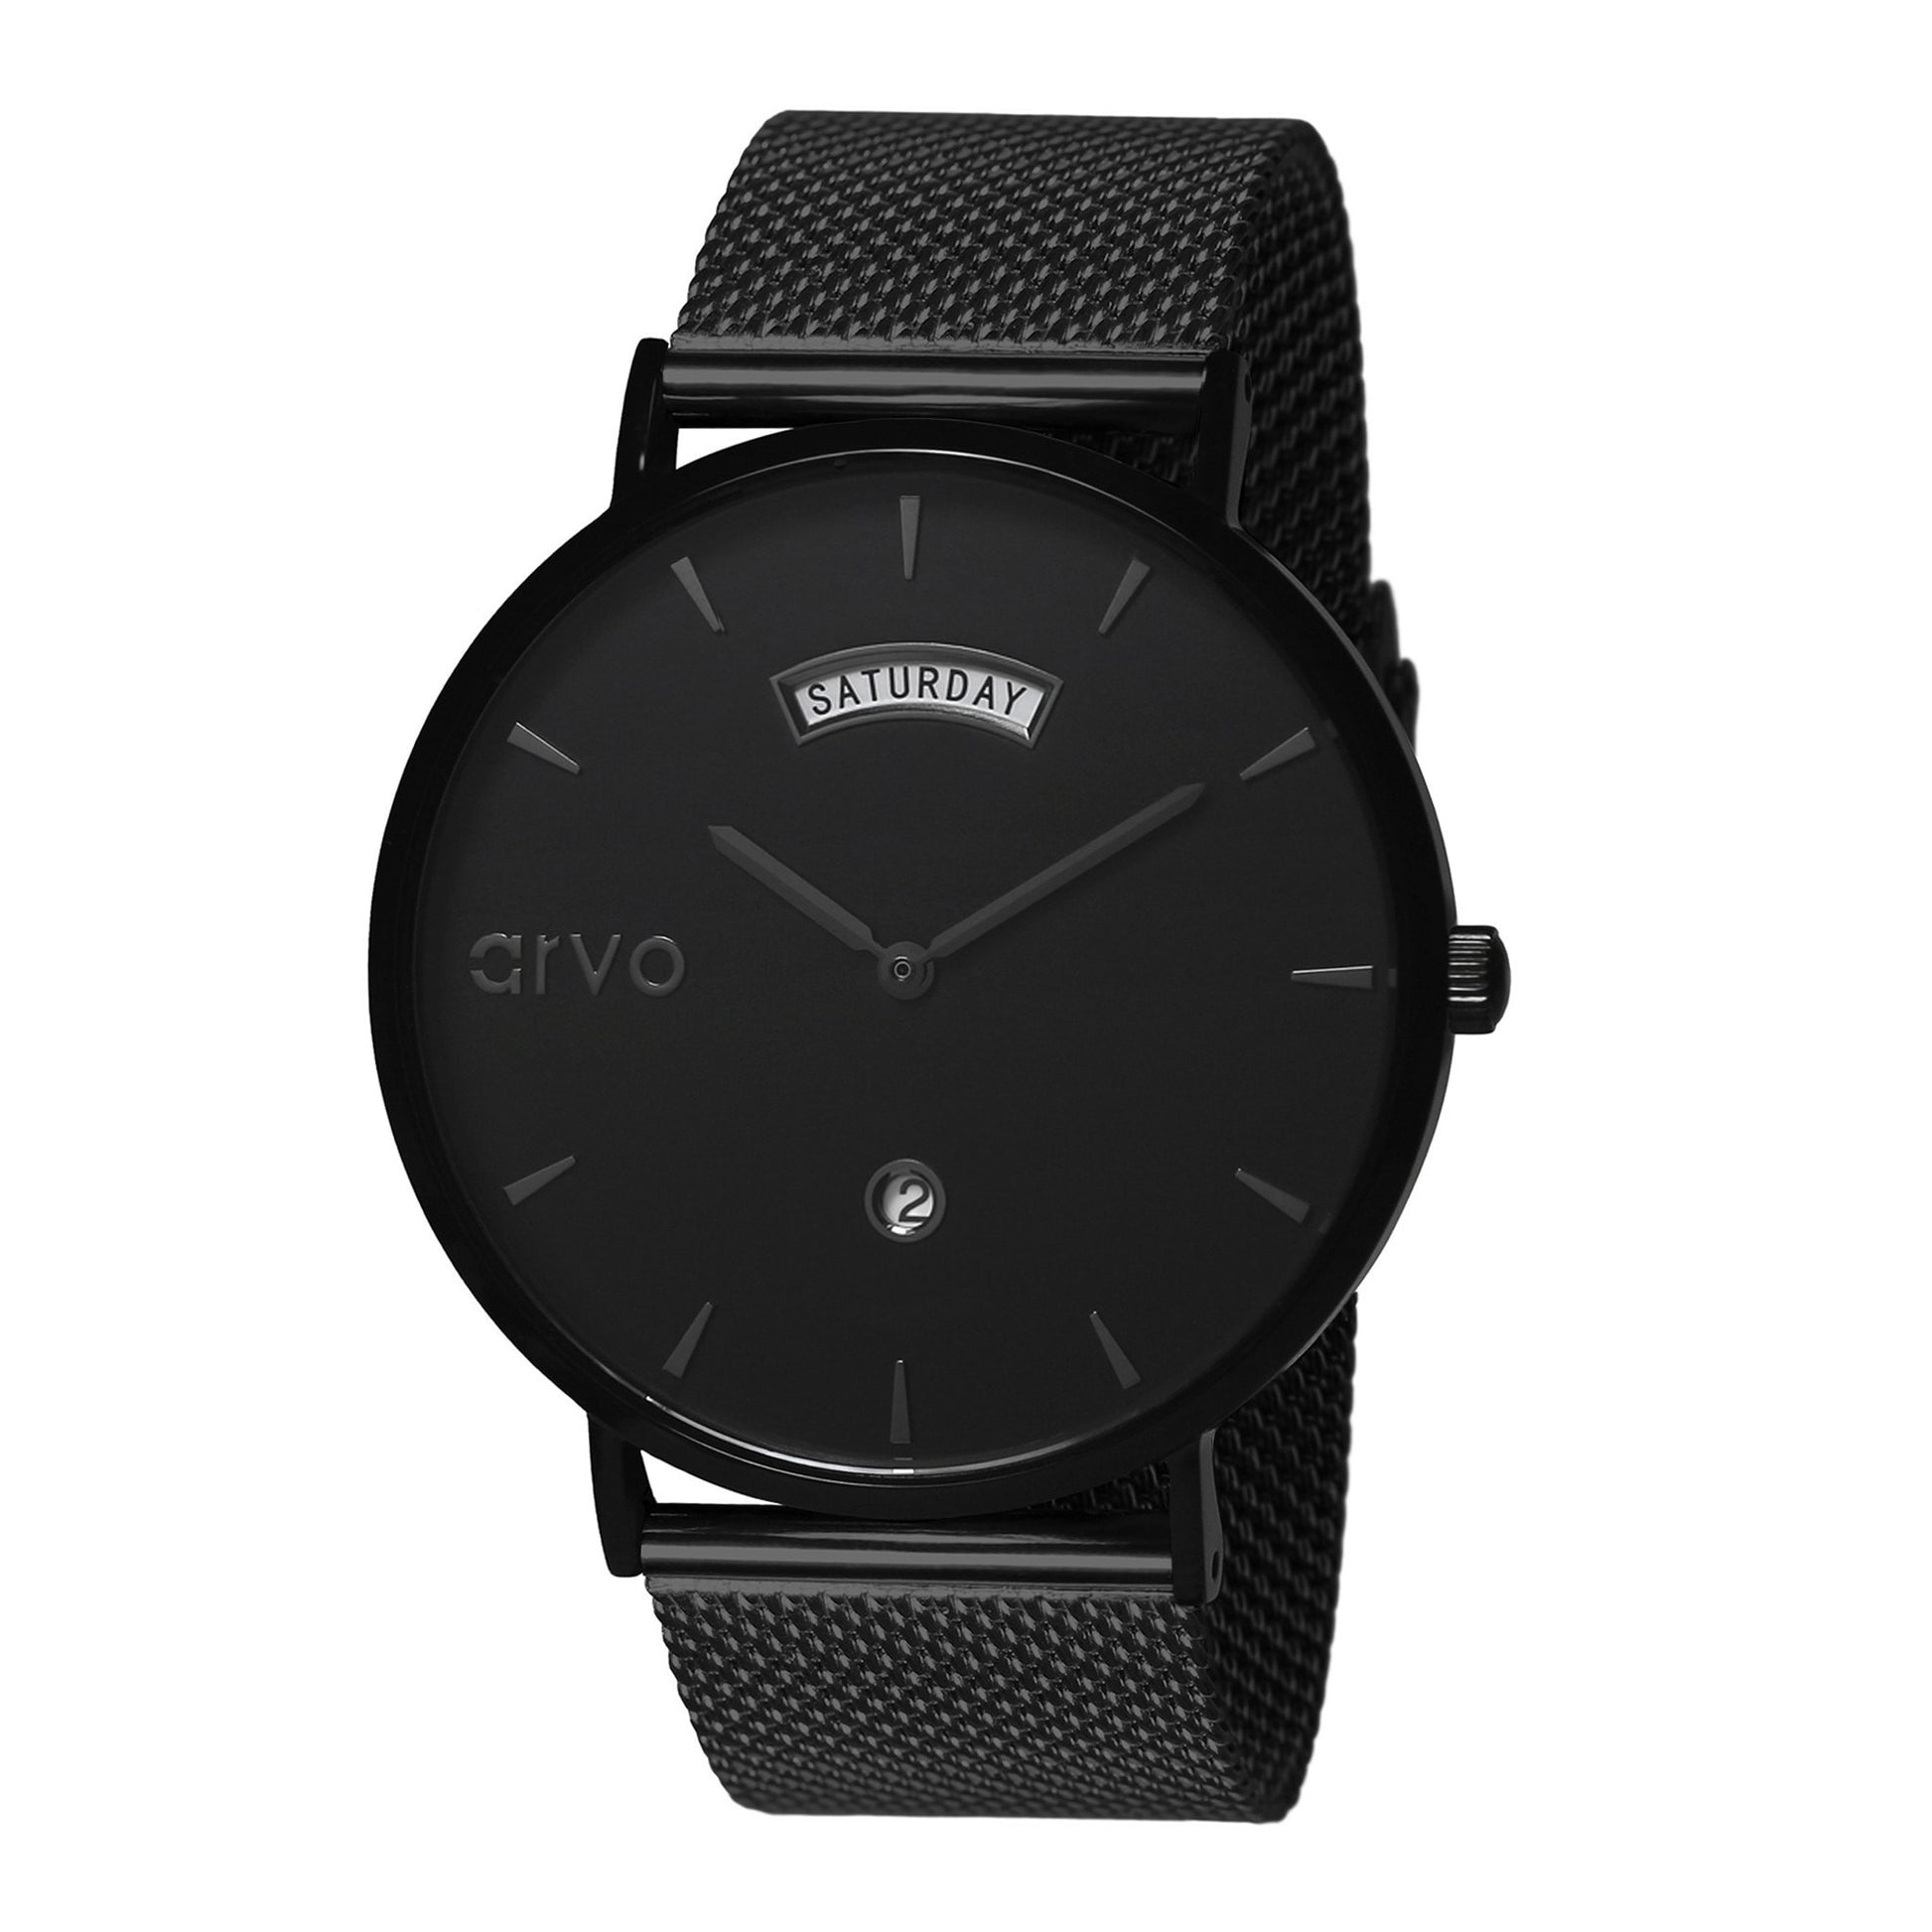 Arvo Black watches for men